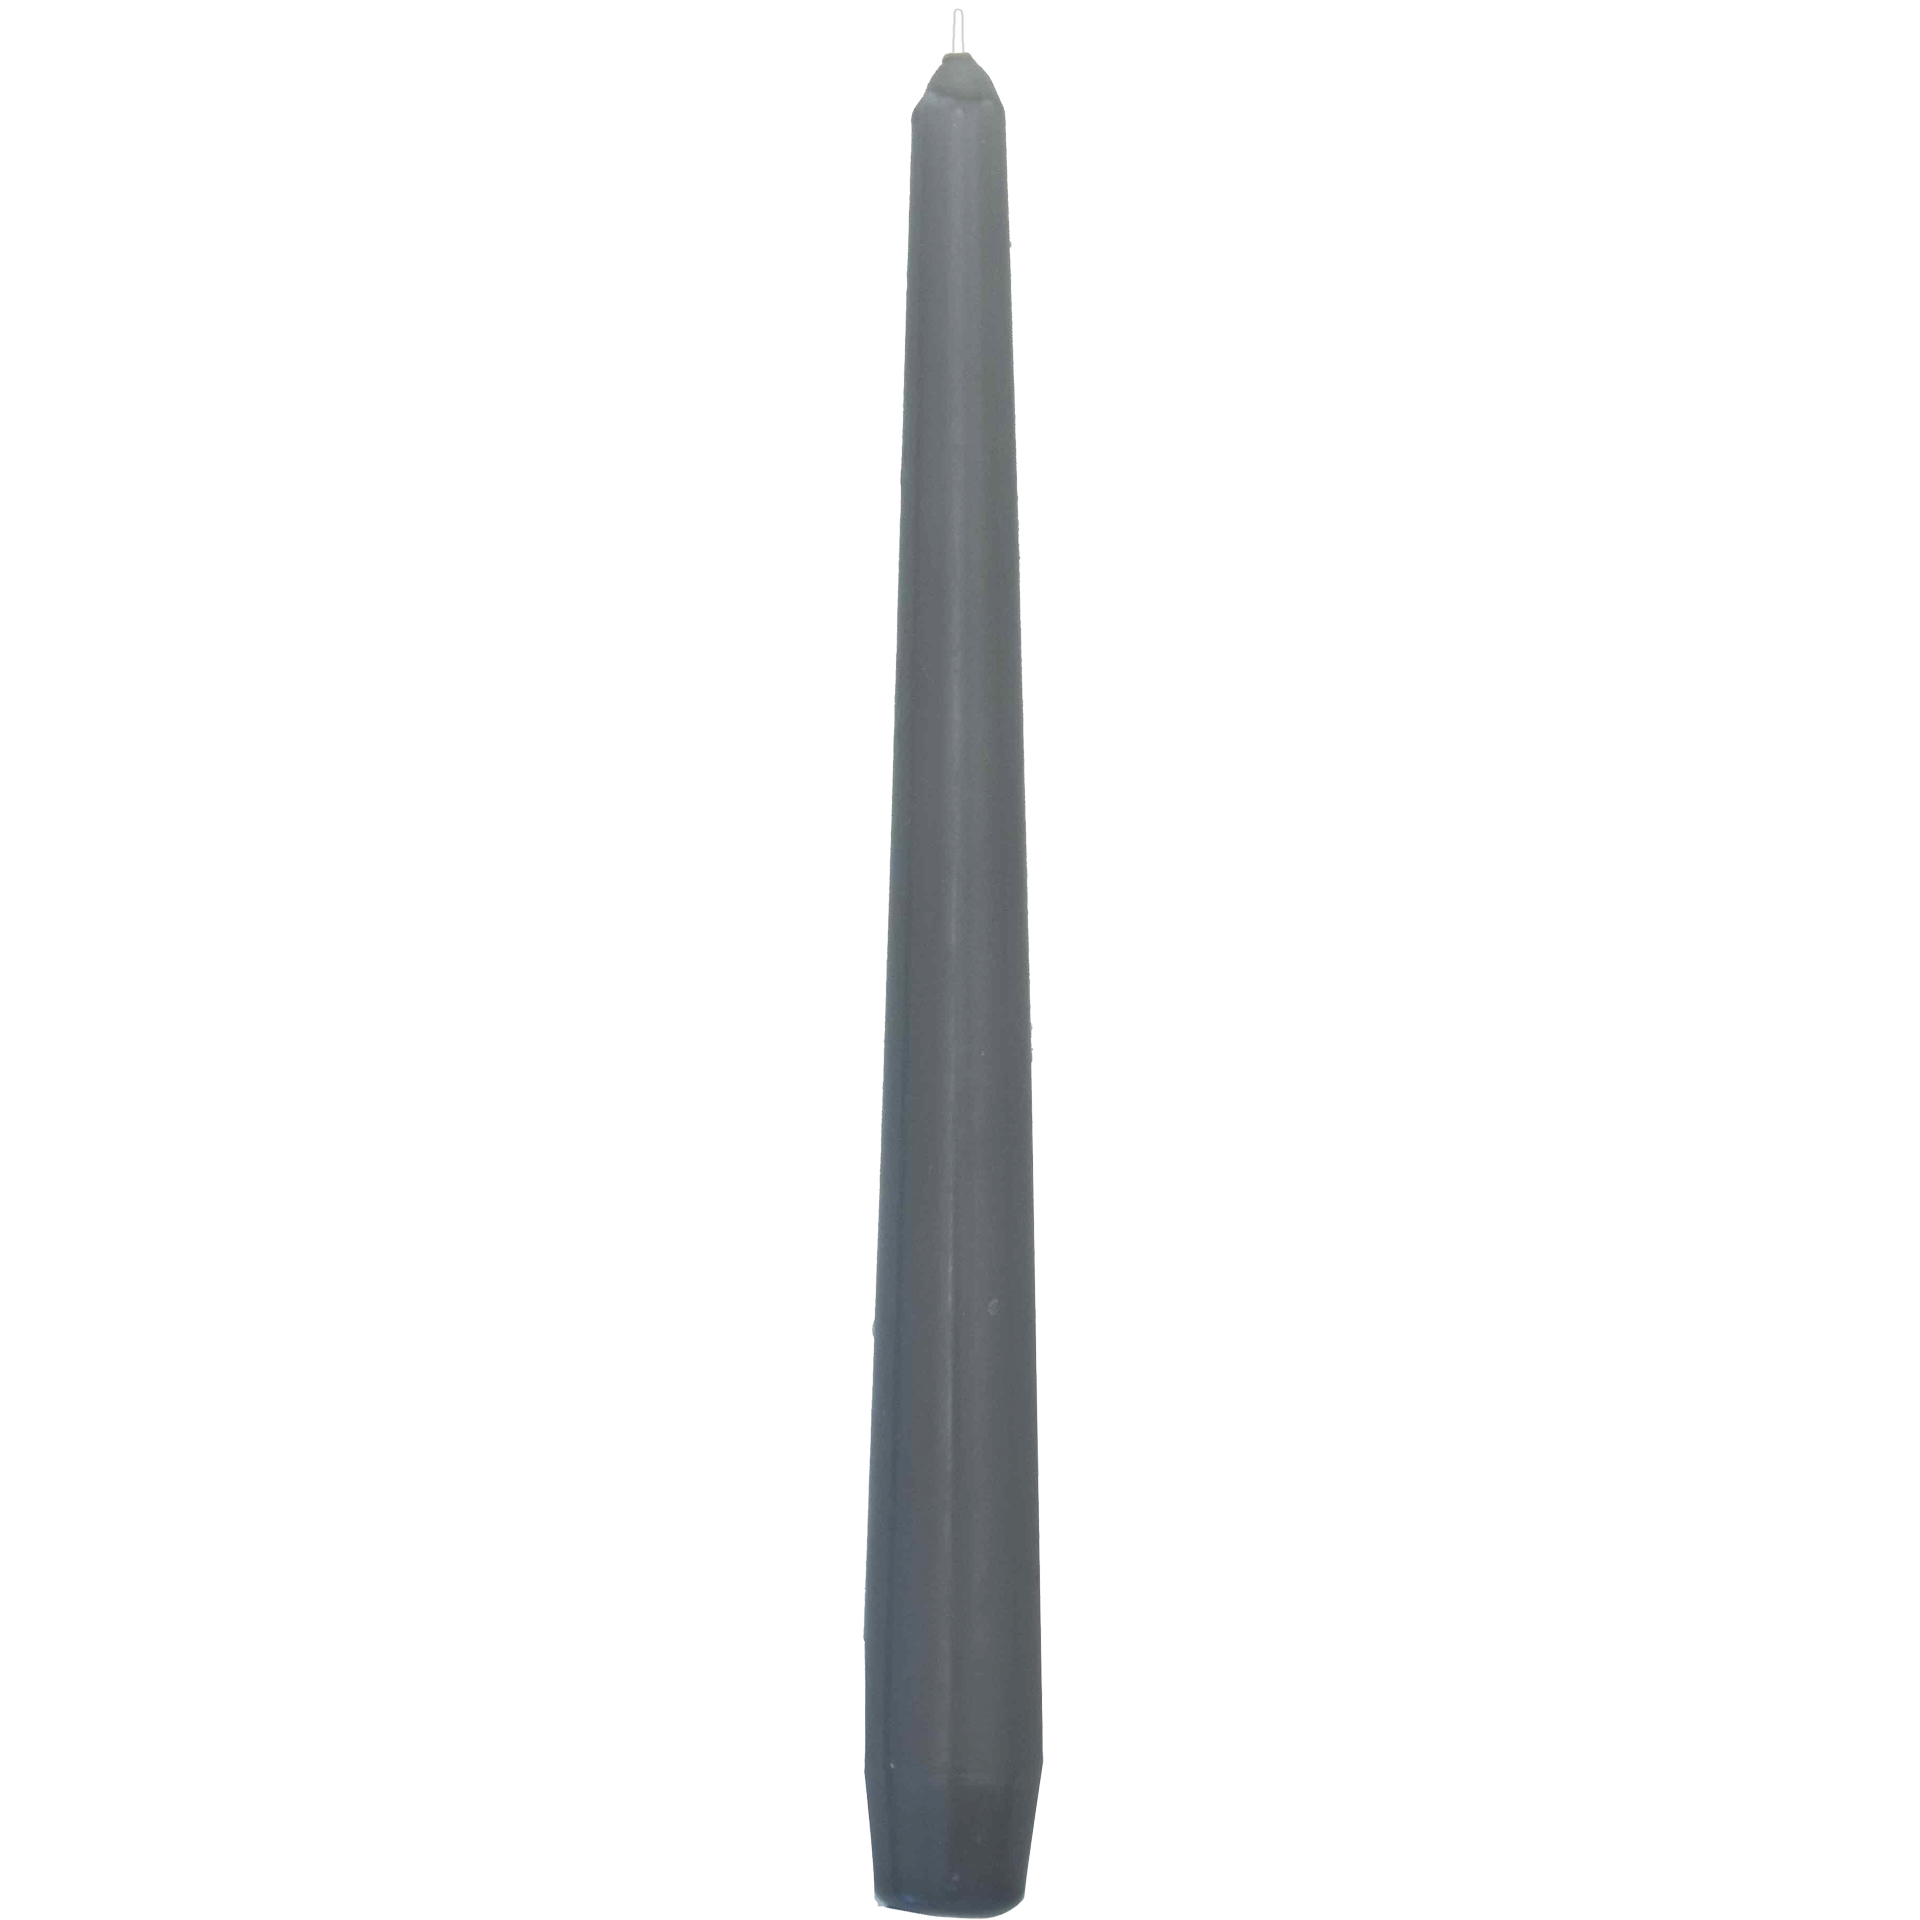 Spitzkerze | einzeln cellophaniert grau h 24,5 cm | Ø 2,4 cm 